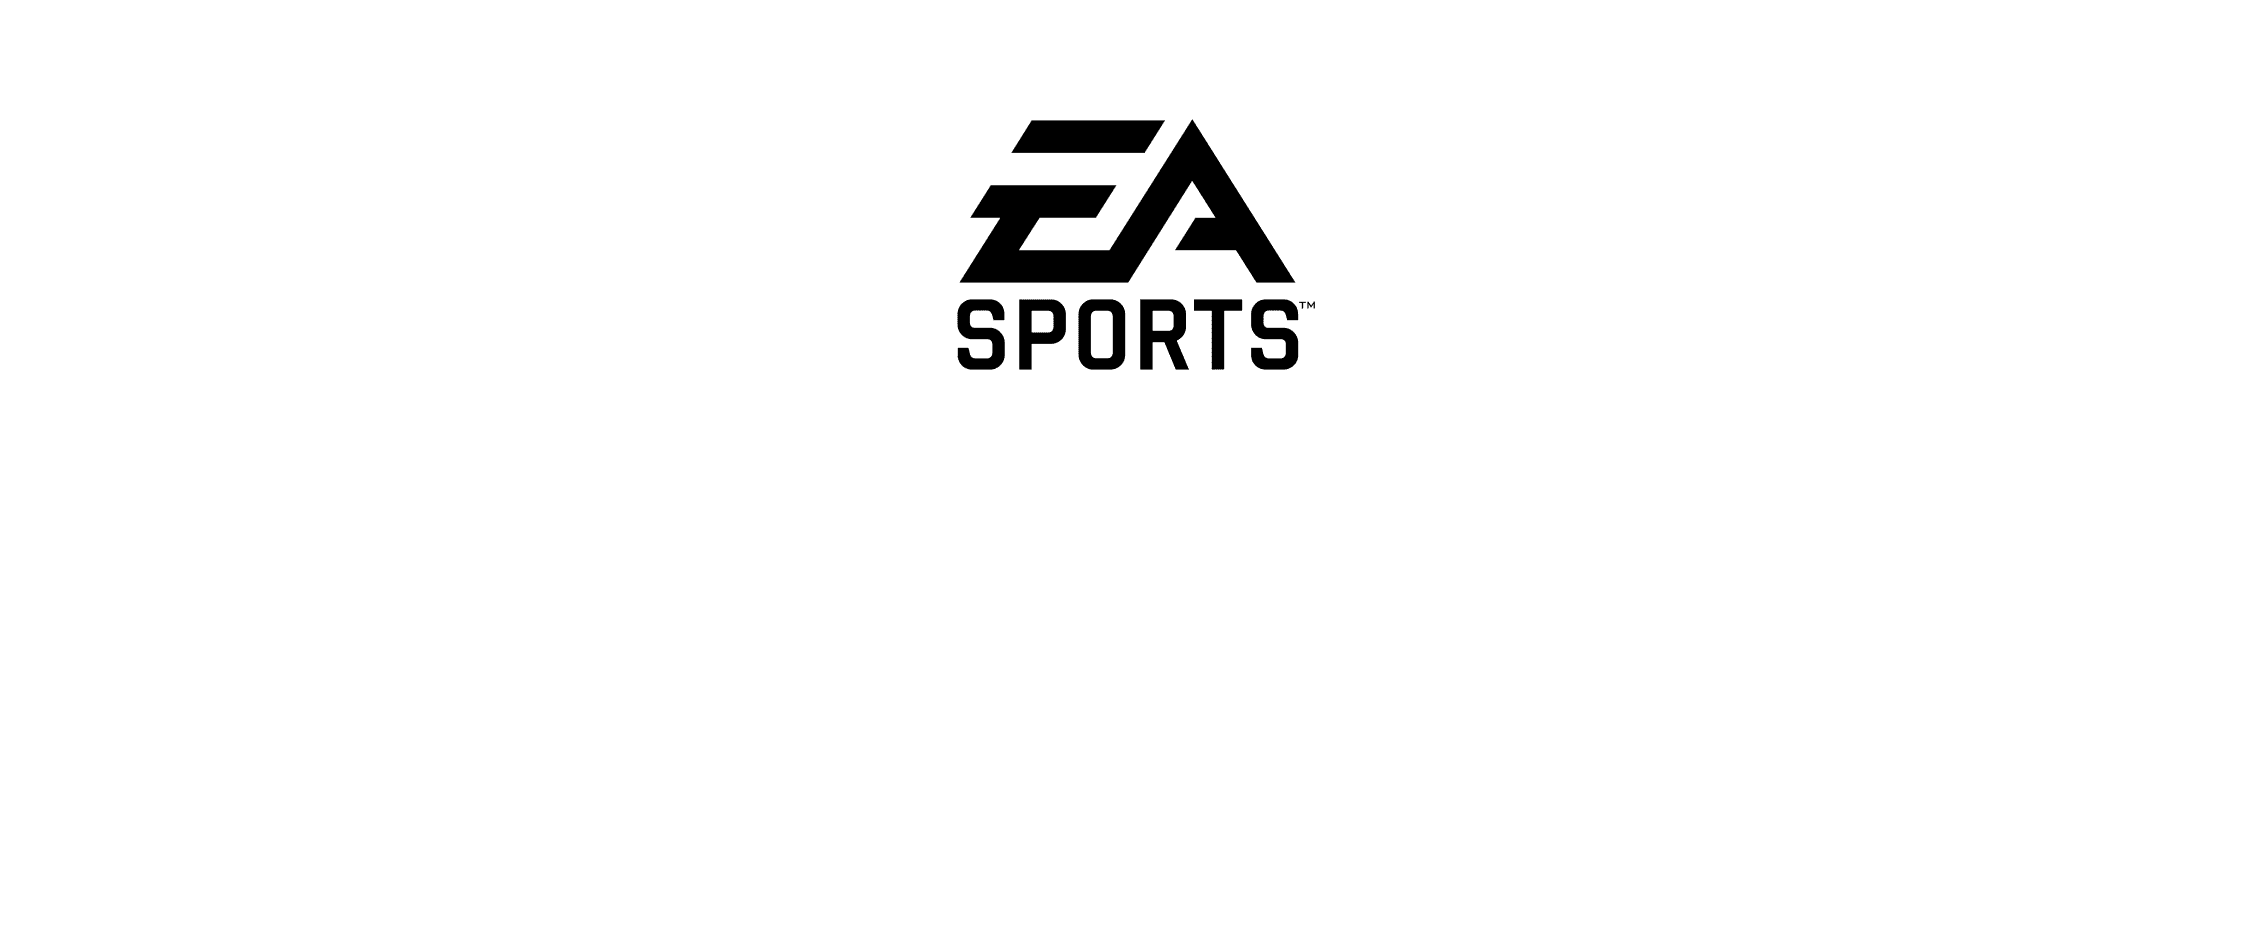 EA Play está saindo por R$ 6 para novos assinantes